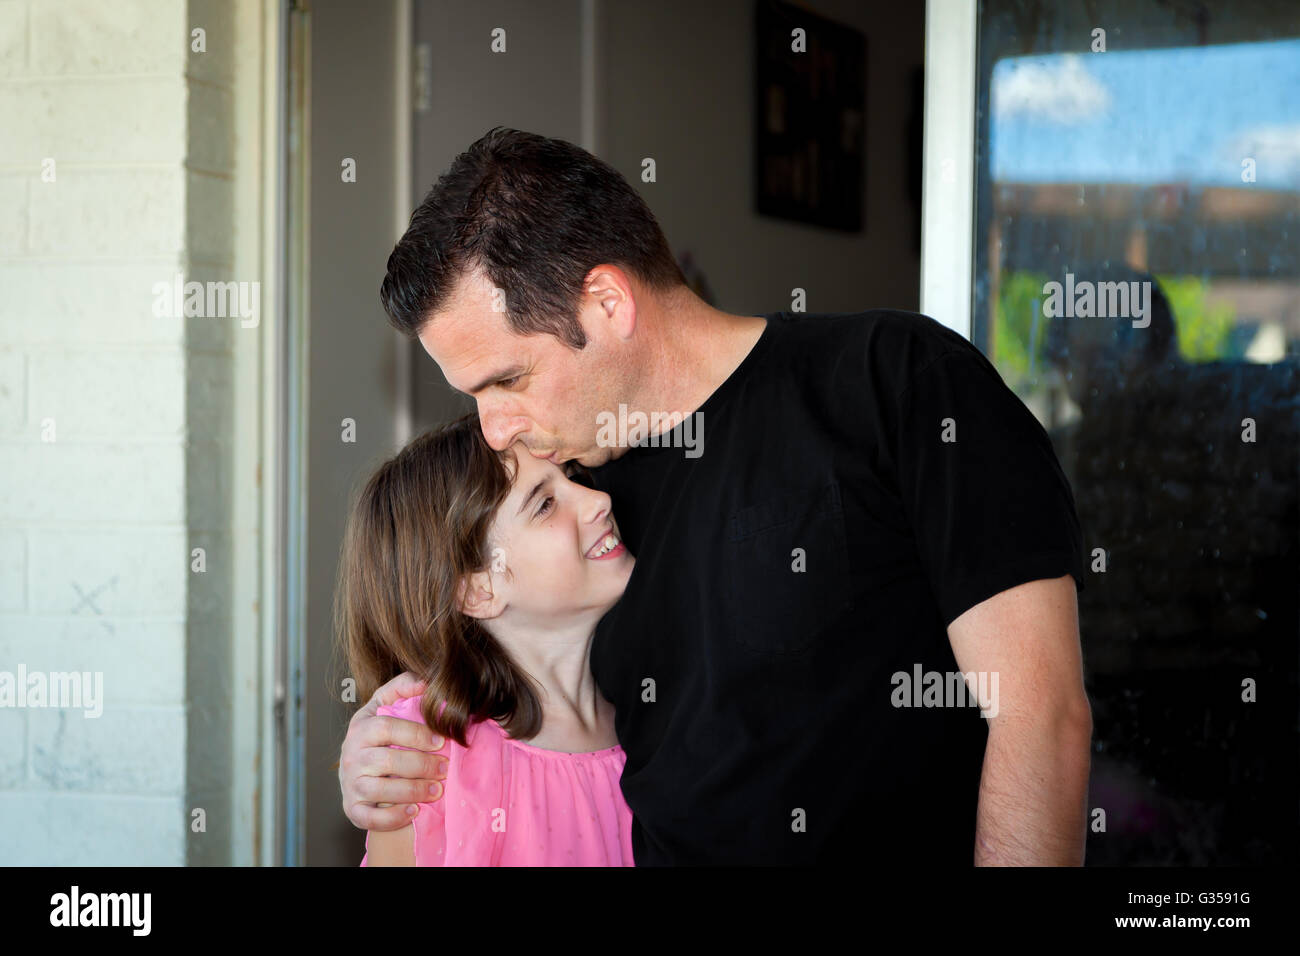 Ein Vater küsst seine Tochter auf die Stirn, als er sie umarmt und sie in der Nähe zieht. Stockfoto